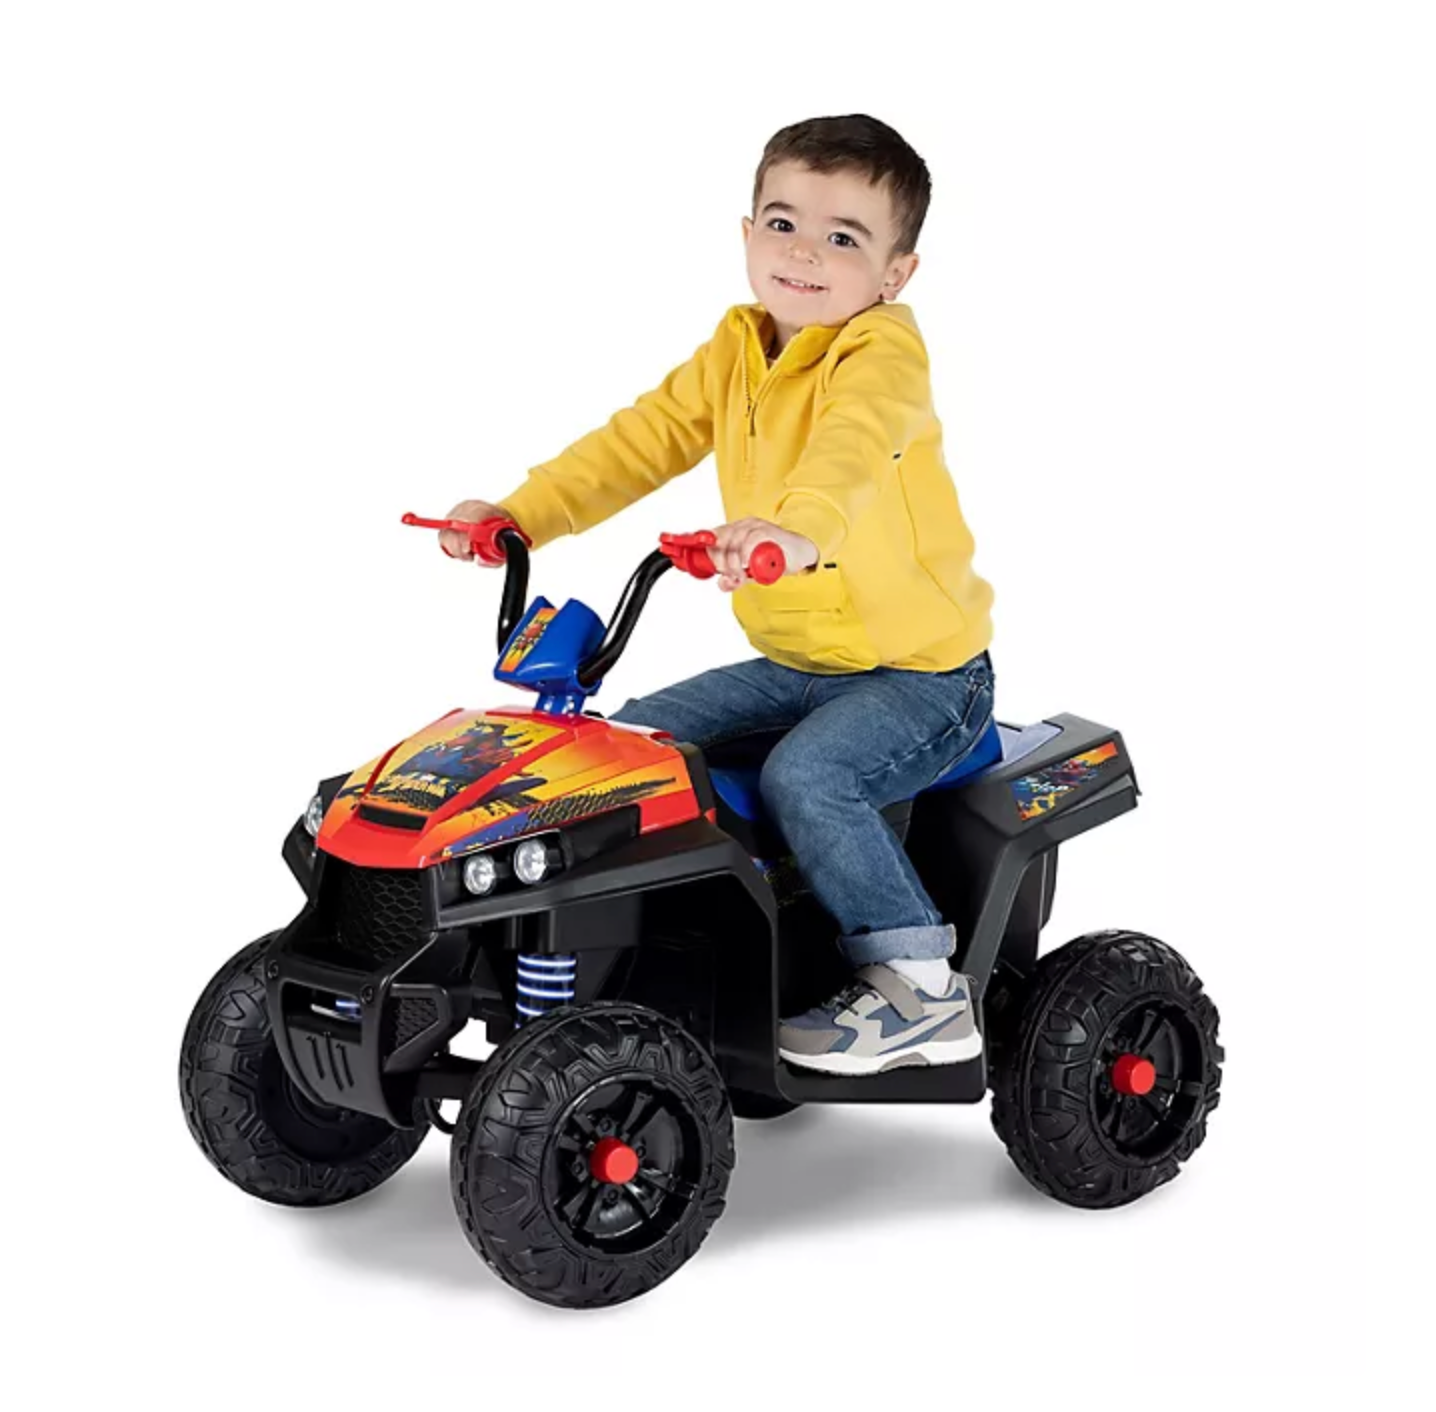 Disney 12V ATV Toy Ride-On Spiderman